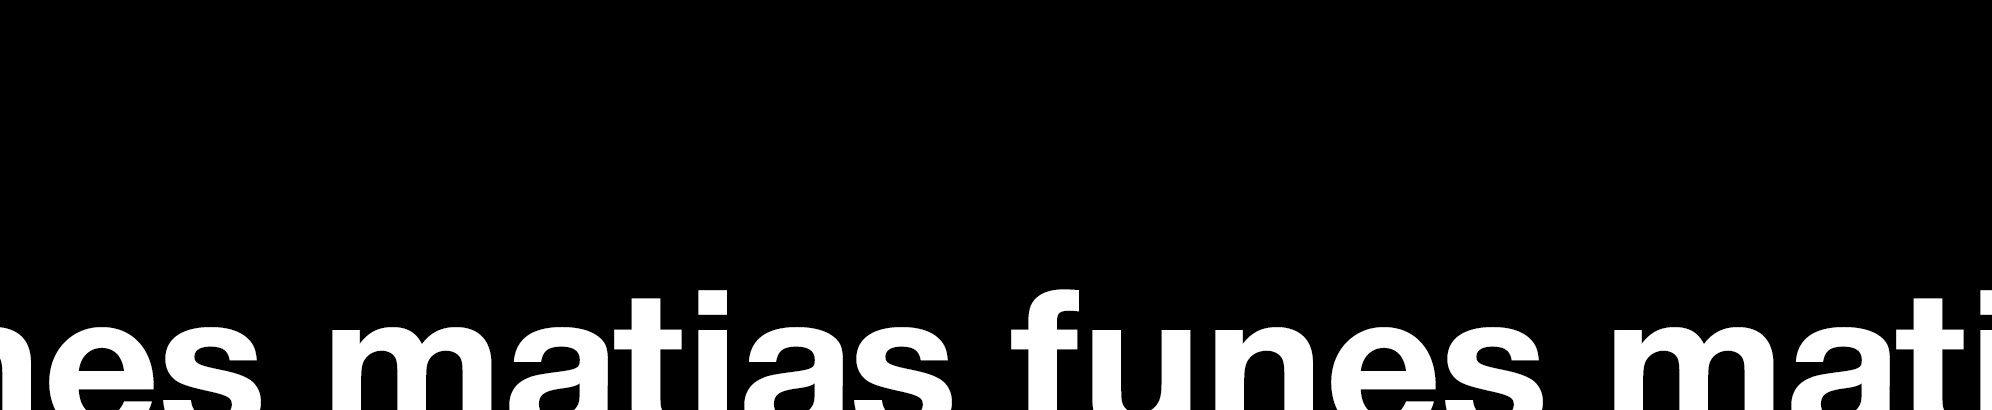 Matias Funes's profile banner